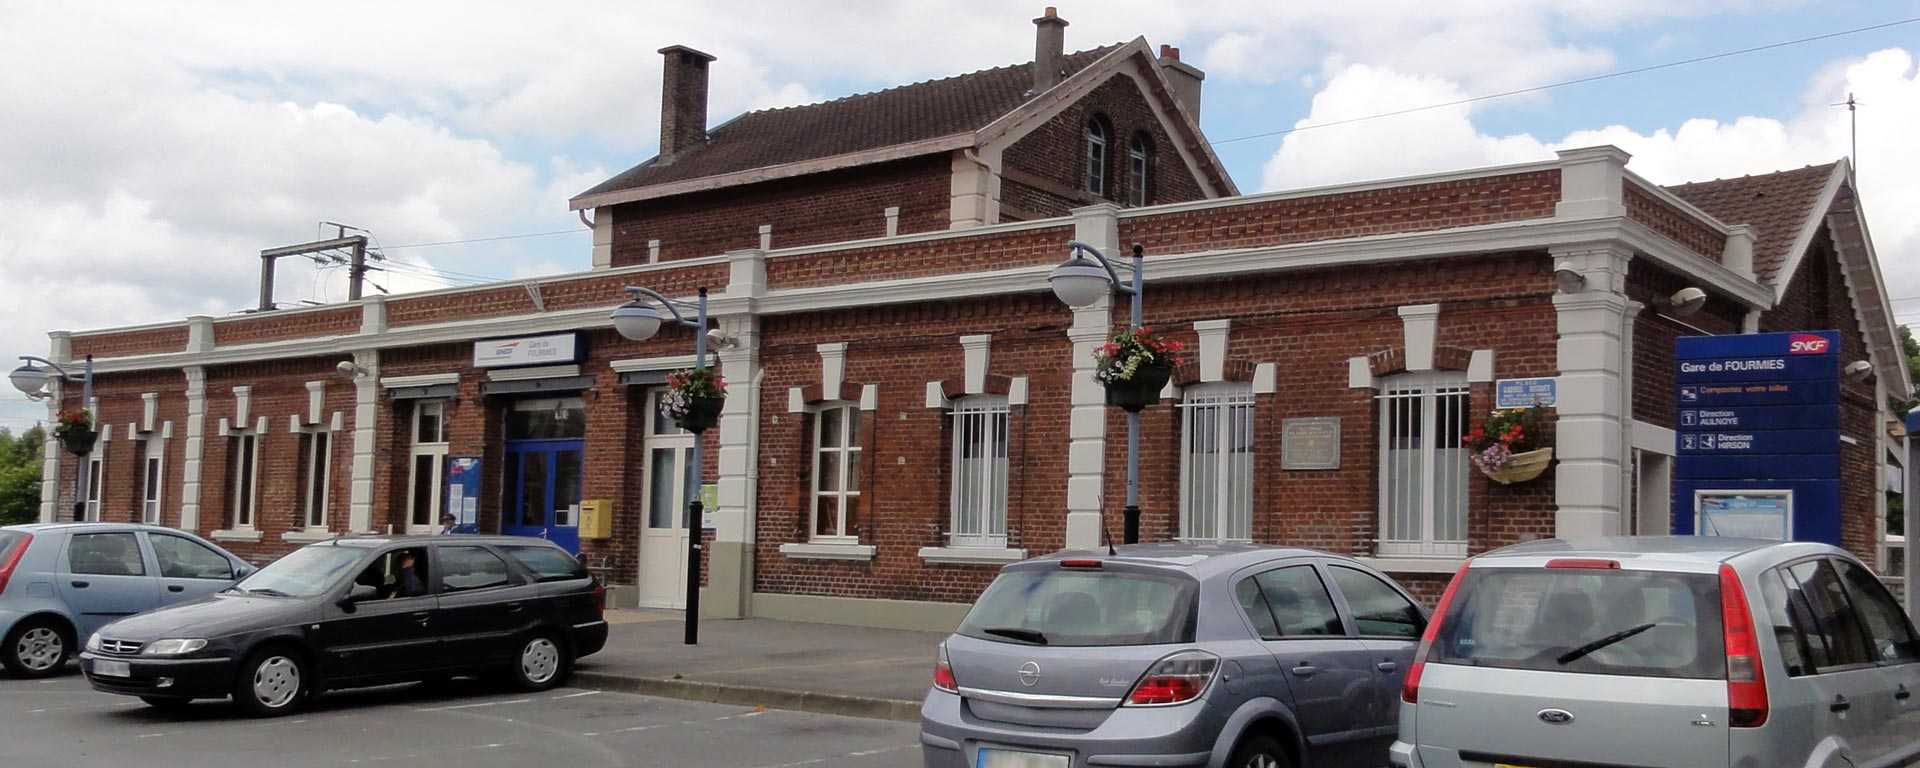 Le bâtiment voyageurs et l'entrée de la gare de Fourmies.